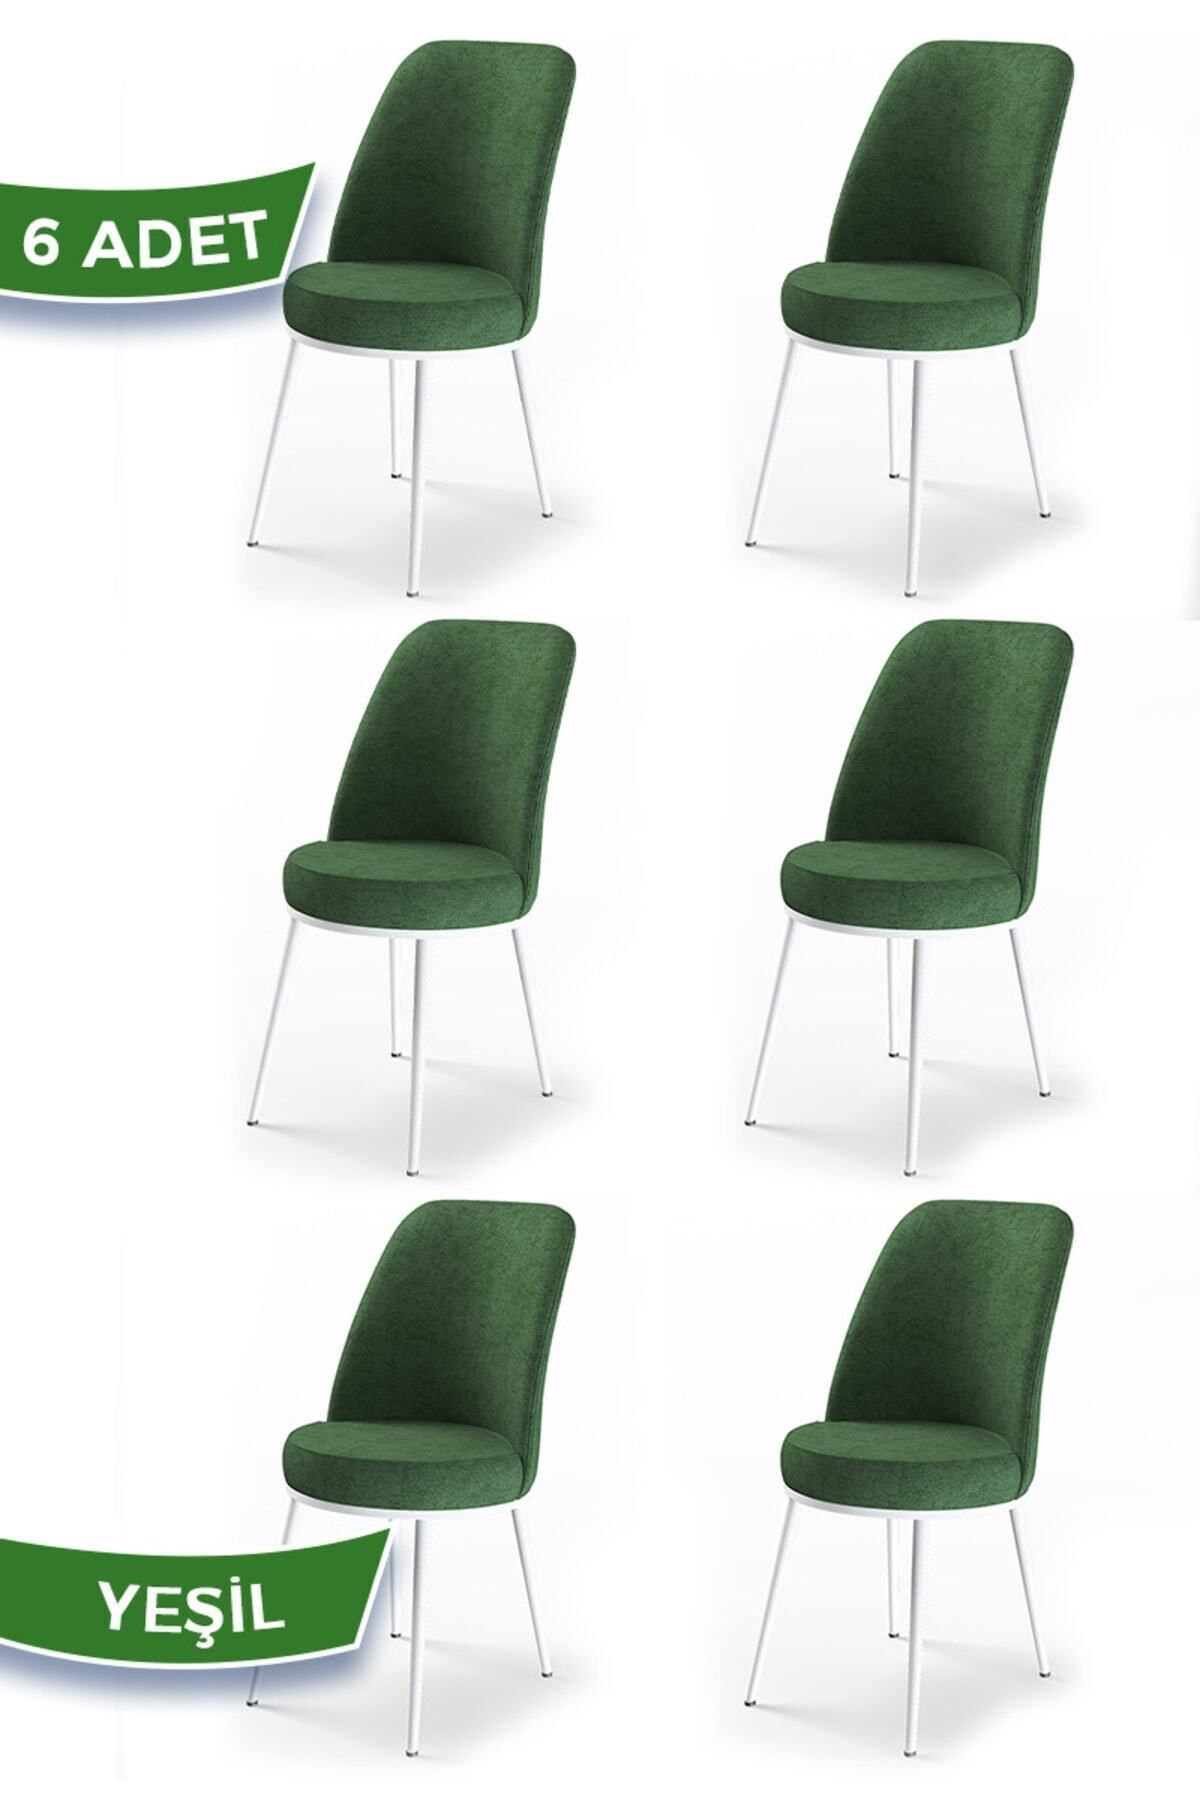 Canisa Concept Dexa Serisi Yeşil Renk 6 Adet Sandalye, Renk Yeşil, Ayaklar Beyaz